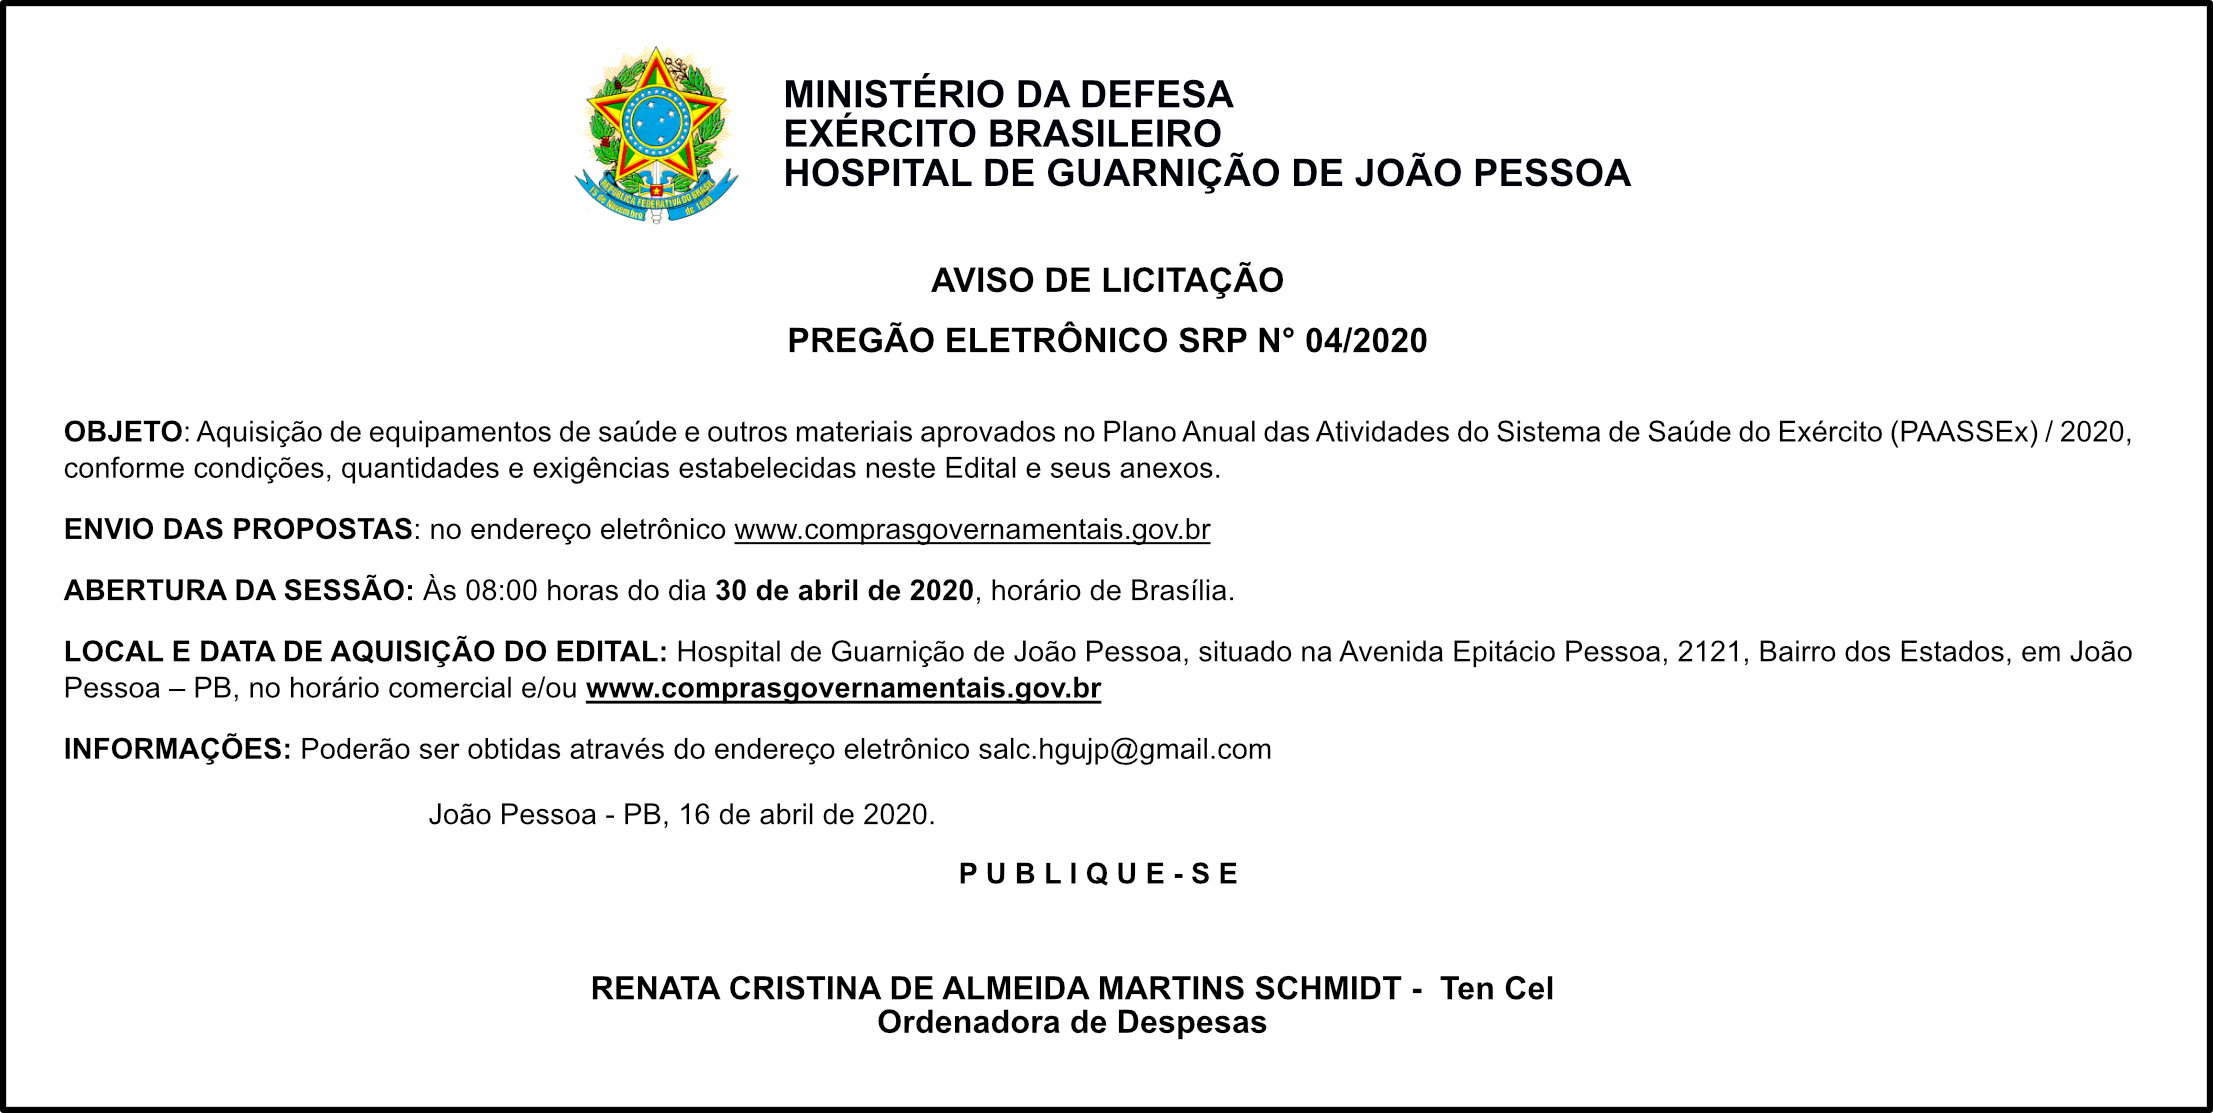 HOSPITAL DE GUARNIÇÃO DE JOÃO PESSOA – AVISO DE LICITAÇÃO – PREGÃO ELETRÔNICO SRP N° 04/2020